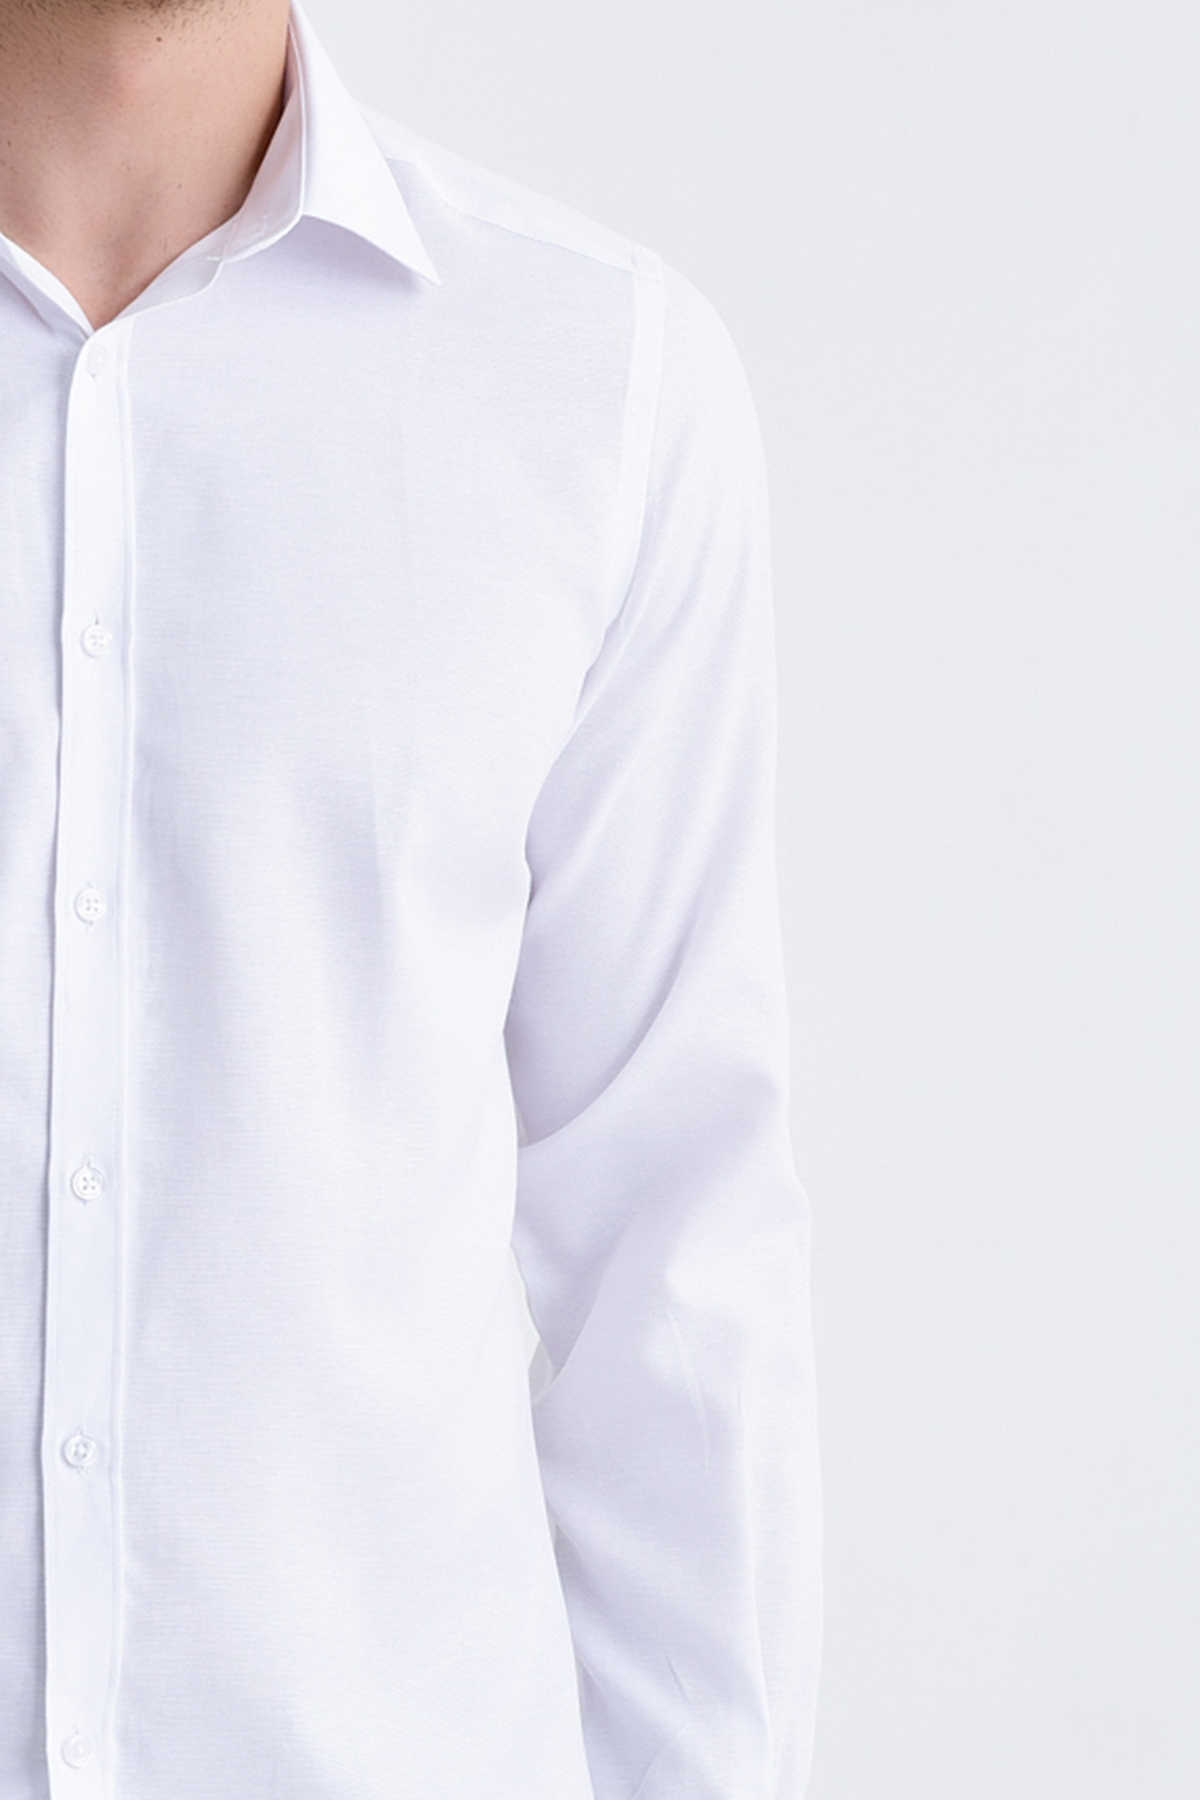 Beyaz Desenli Klasik Gömlek